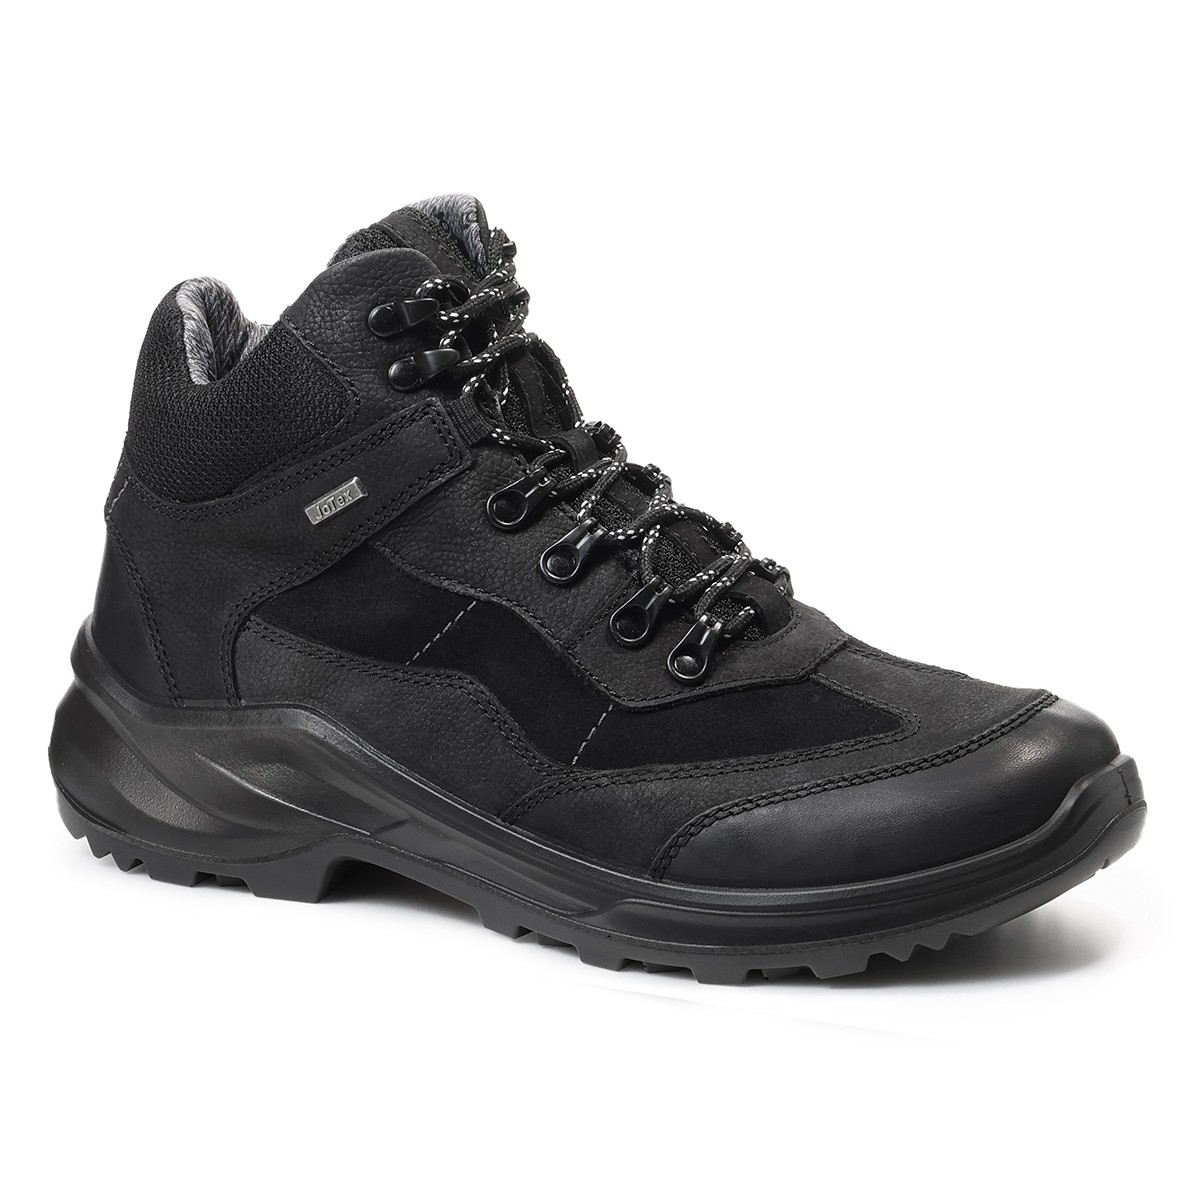 Мужские треккинговые ботинки Trekking, Jomos, черные сандалии мужские jomos черные